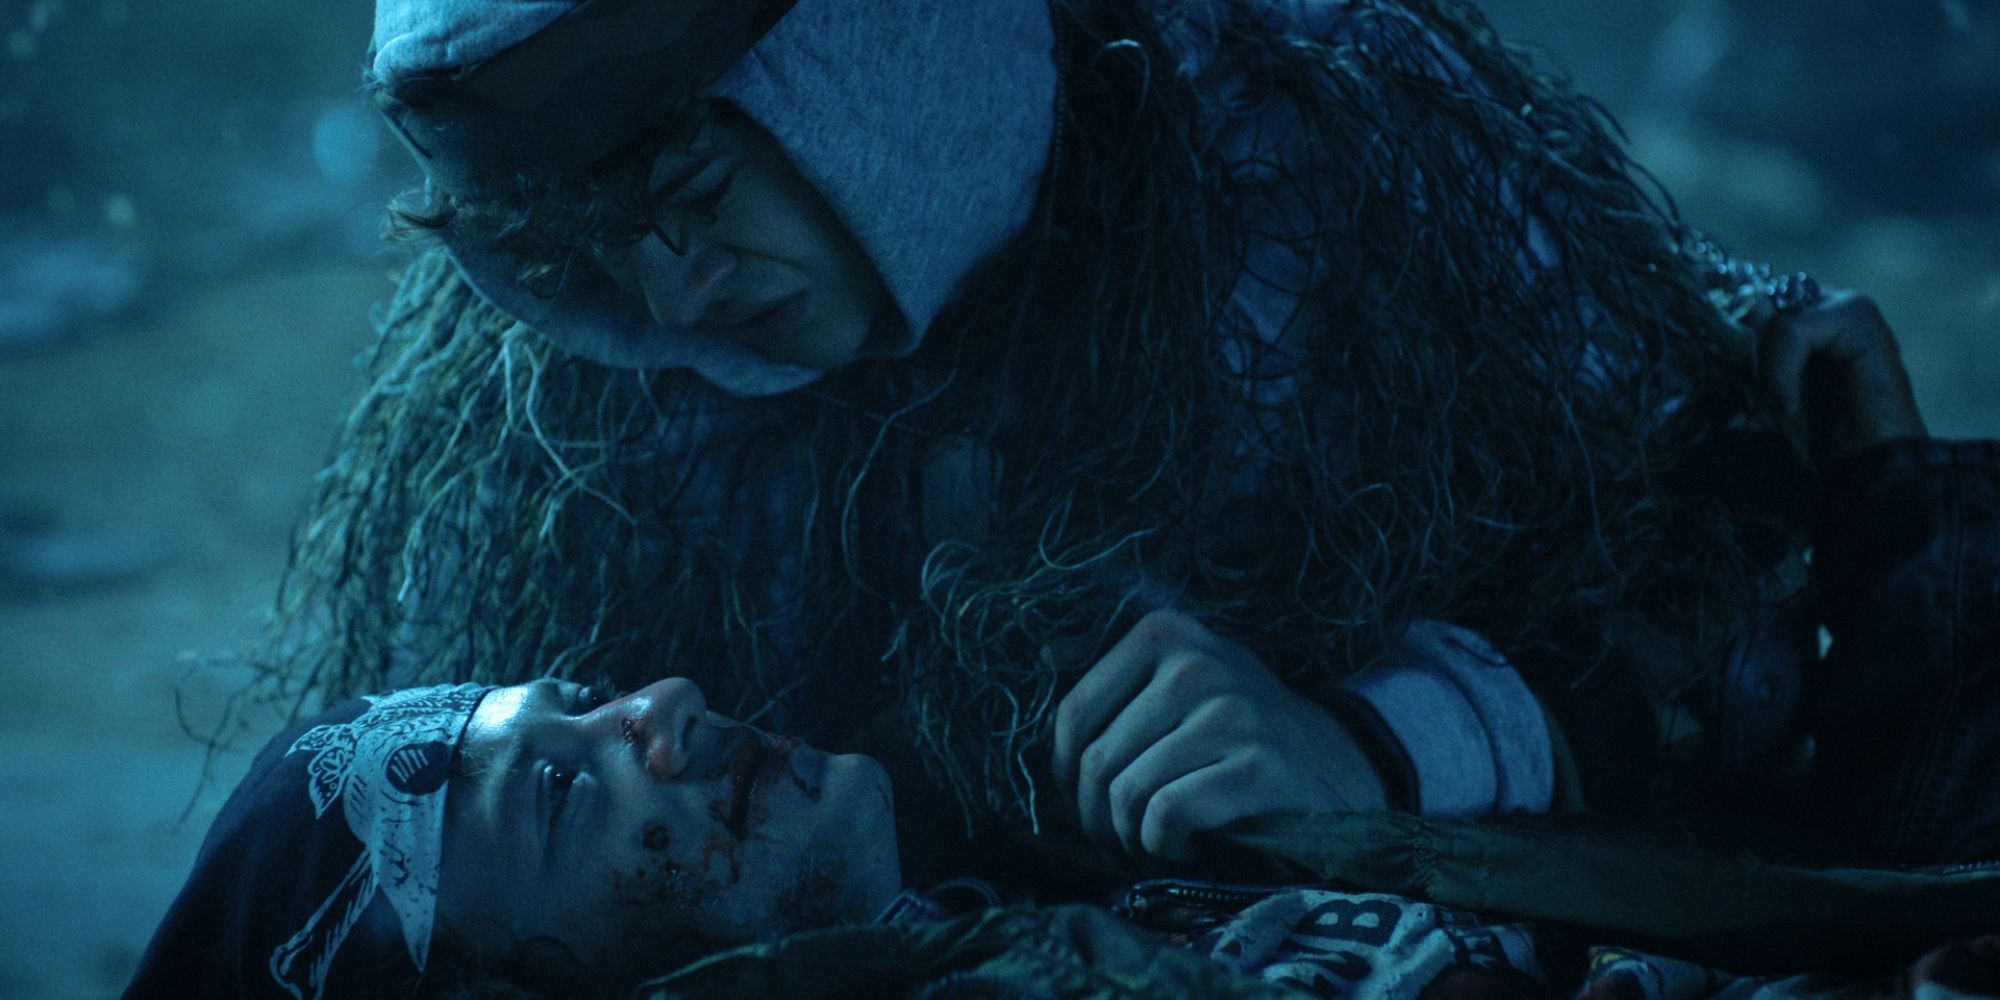 Dustin holds Eddie as he dies in Stranger Things season 4